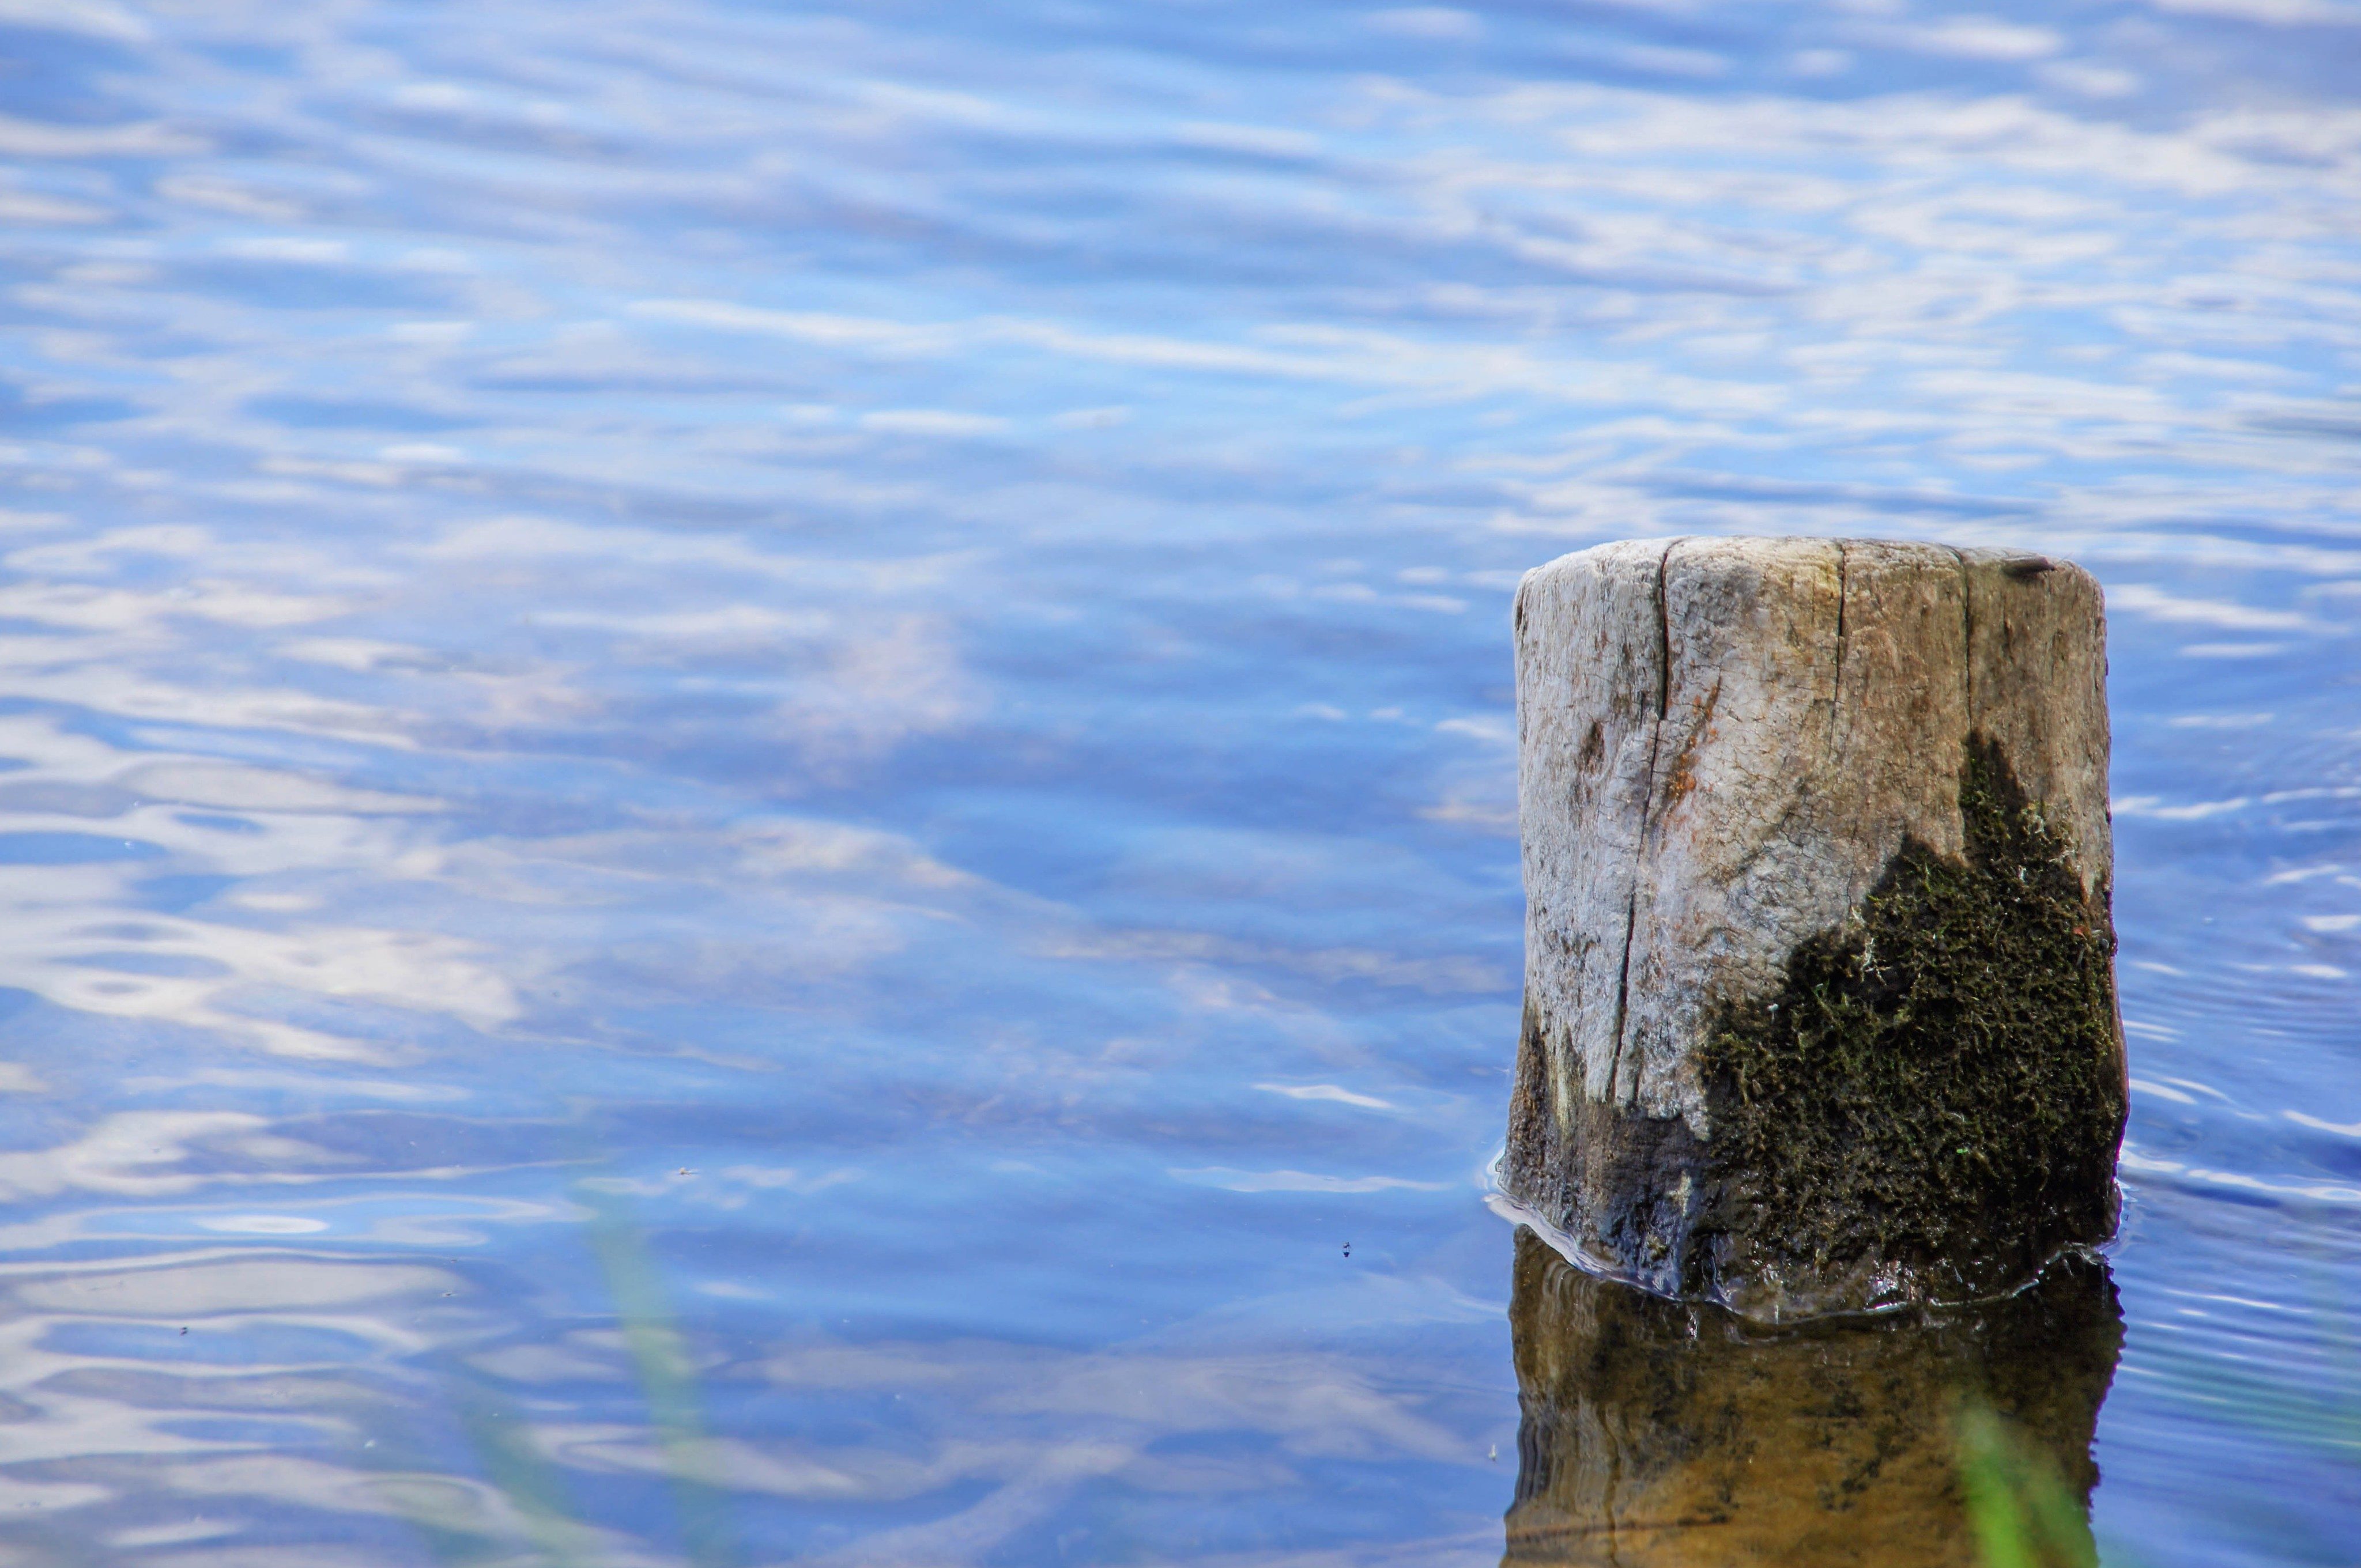 Водяная краса. Деревяшка в воде. Водяной спокойствие. Картинки холодно море деревяшки. Фото деревяшек в воде.